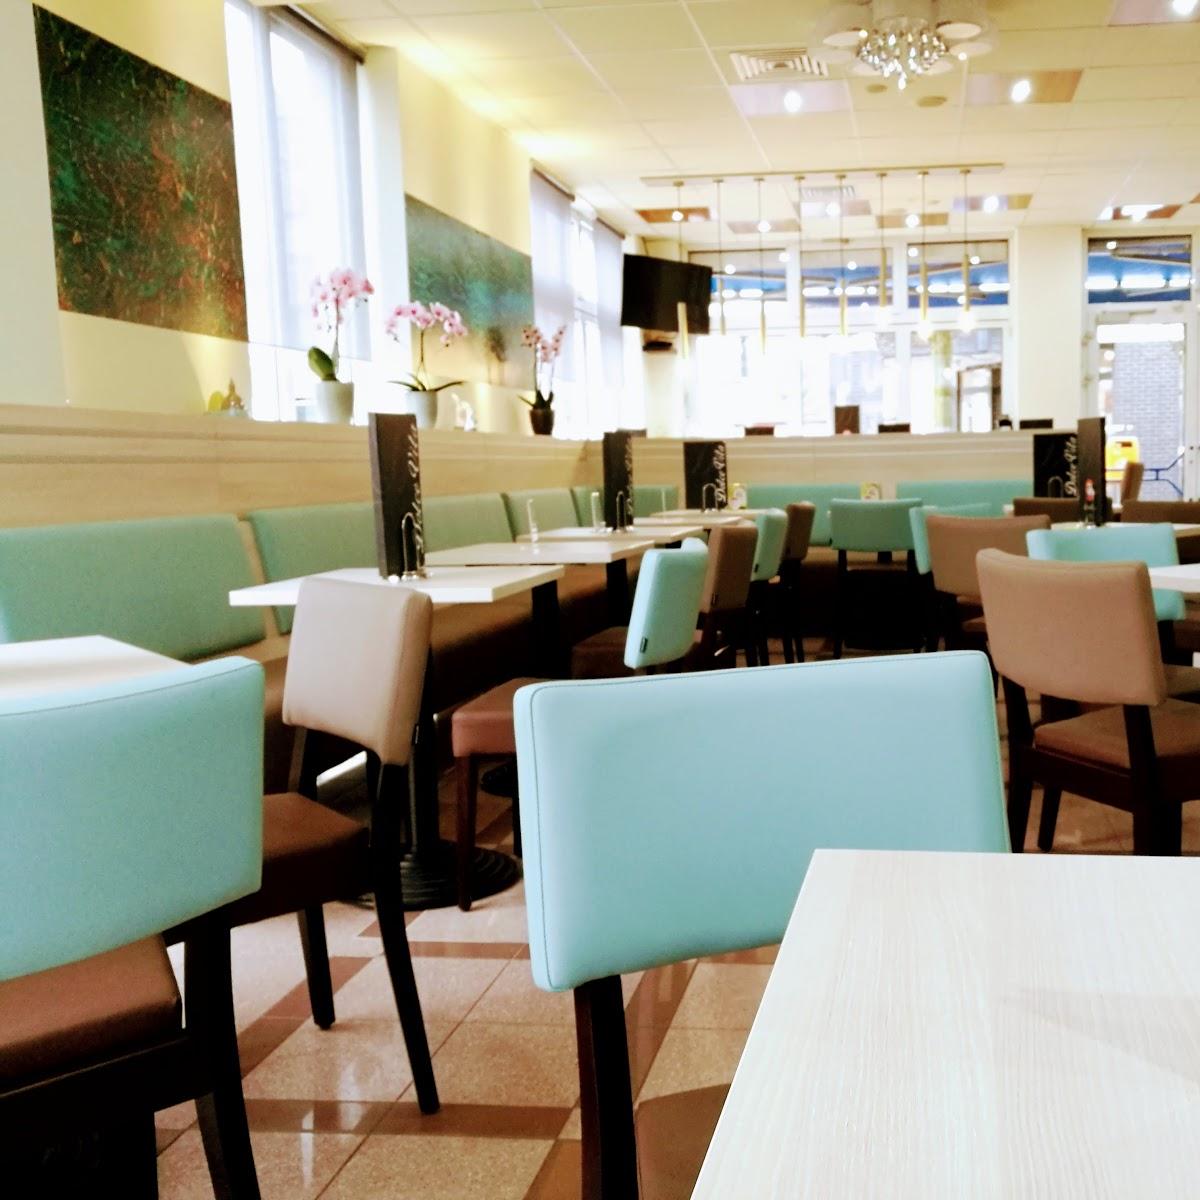 Restaurant "Eiscafé Dolce Vita" in Nordhorn